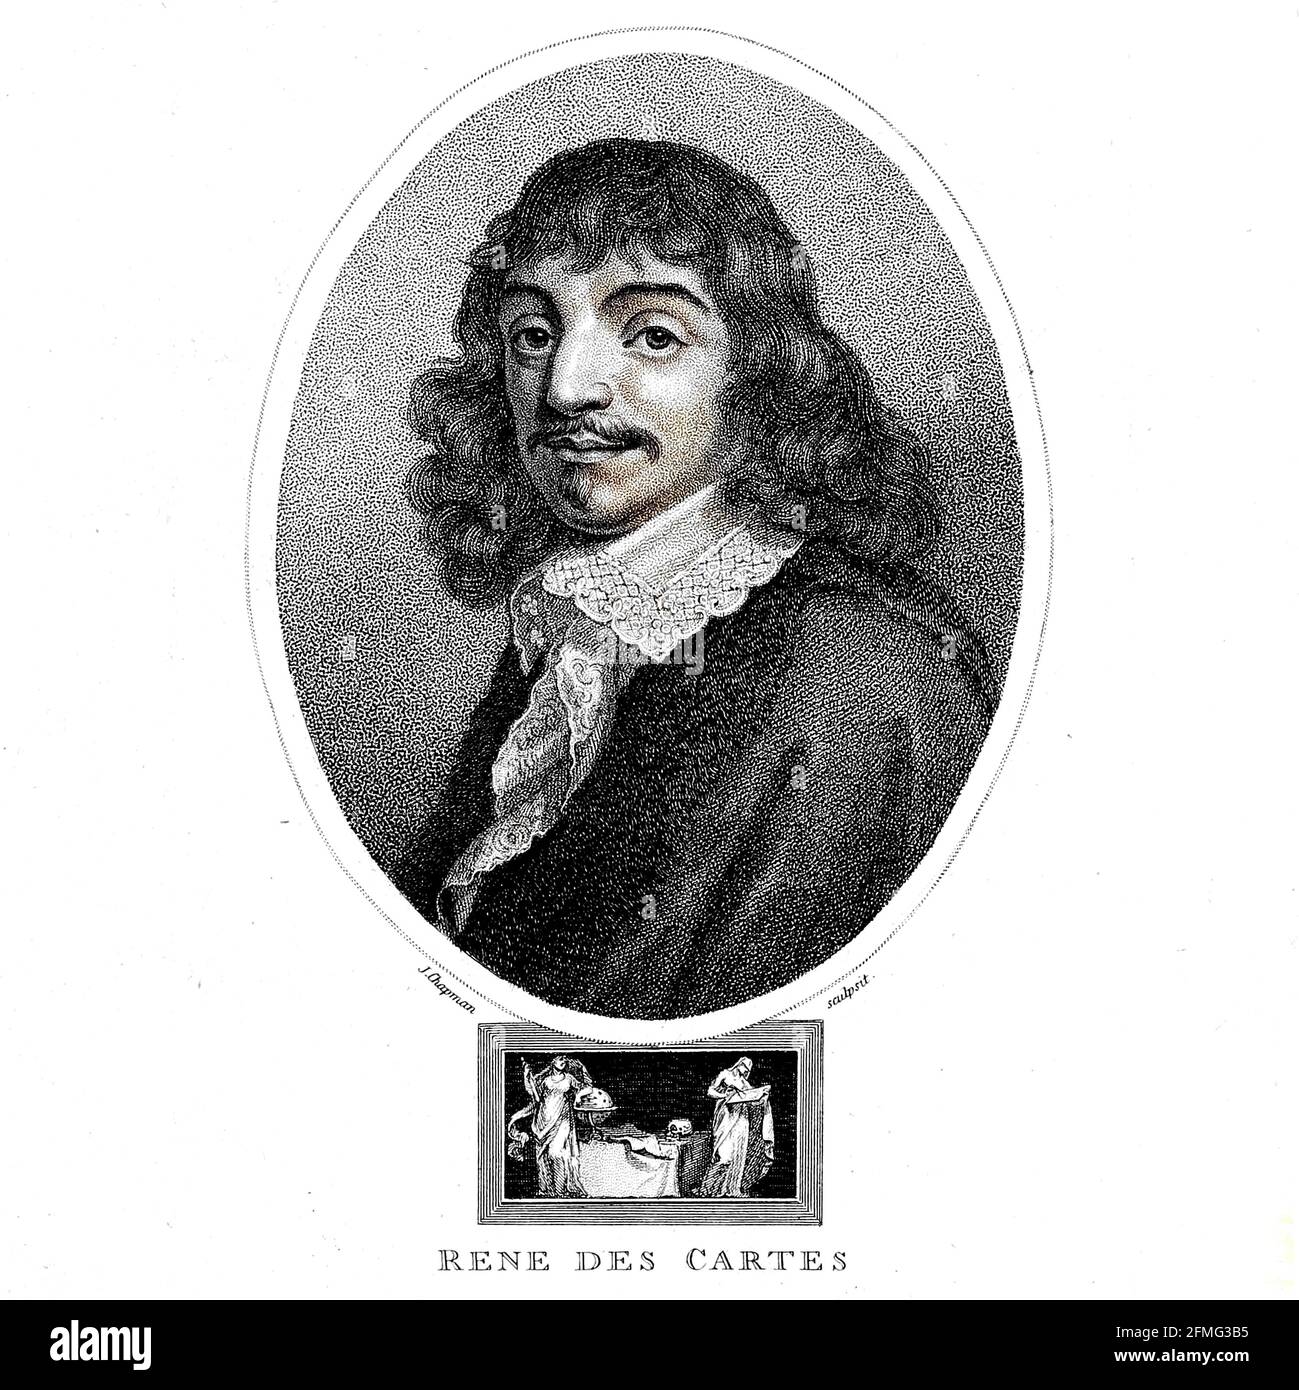 Portrait de René Descartes [ici comme René des cartes] (31 mars 1596 – 11 février 1650[) était un philosophe, mathématicien d'origine française, Et un scientifique qui a passé une grande partie de sa vie professionnelle en République néerlandaise, au service de l'armée néerlandaise de Maurice de Nassau, Prince d'Orange et du Stadtholder des provinces-Unis. Descartes, l'une des figures intellectuelles les plus marquantes de l'âge d'or néerlandais, est également largement considérée comme l'un des fondateurs de la philosophie moderne. Gravure sur plaque de coperplate de l'Encyclopedia Londinensis or, Dictionnaire universel des arts, des sciences et de la Lite Banque D'Images